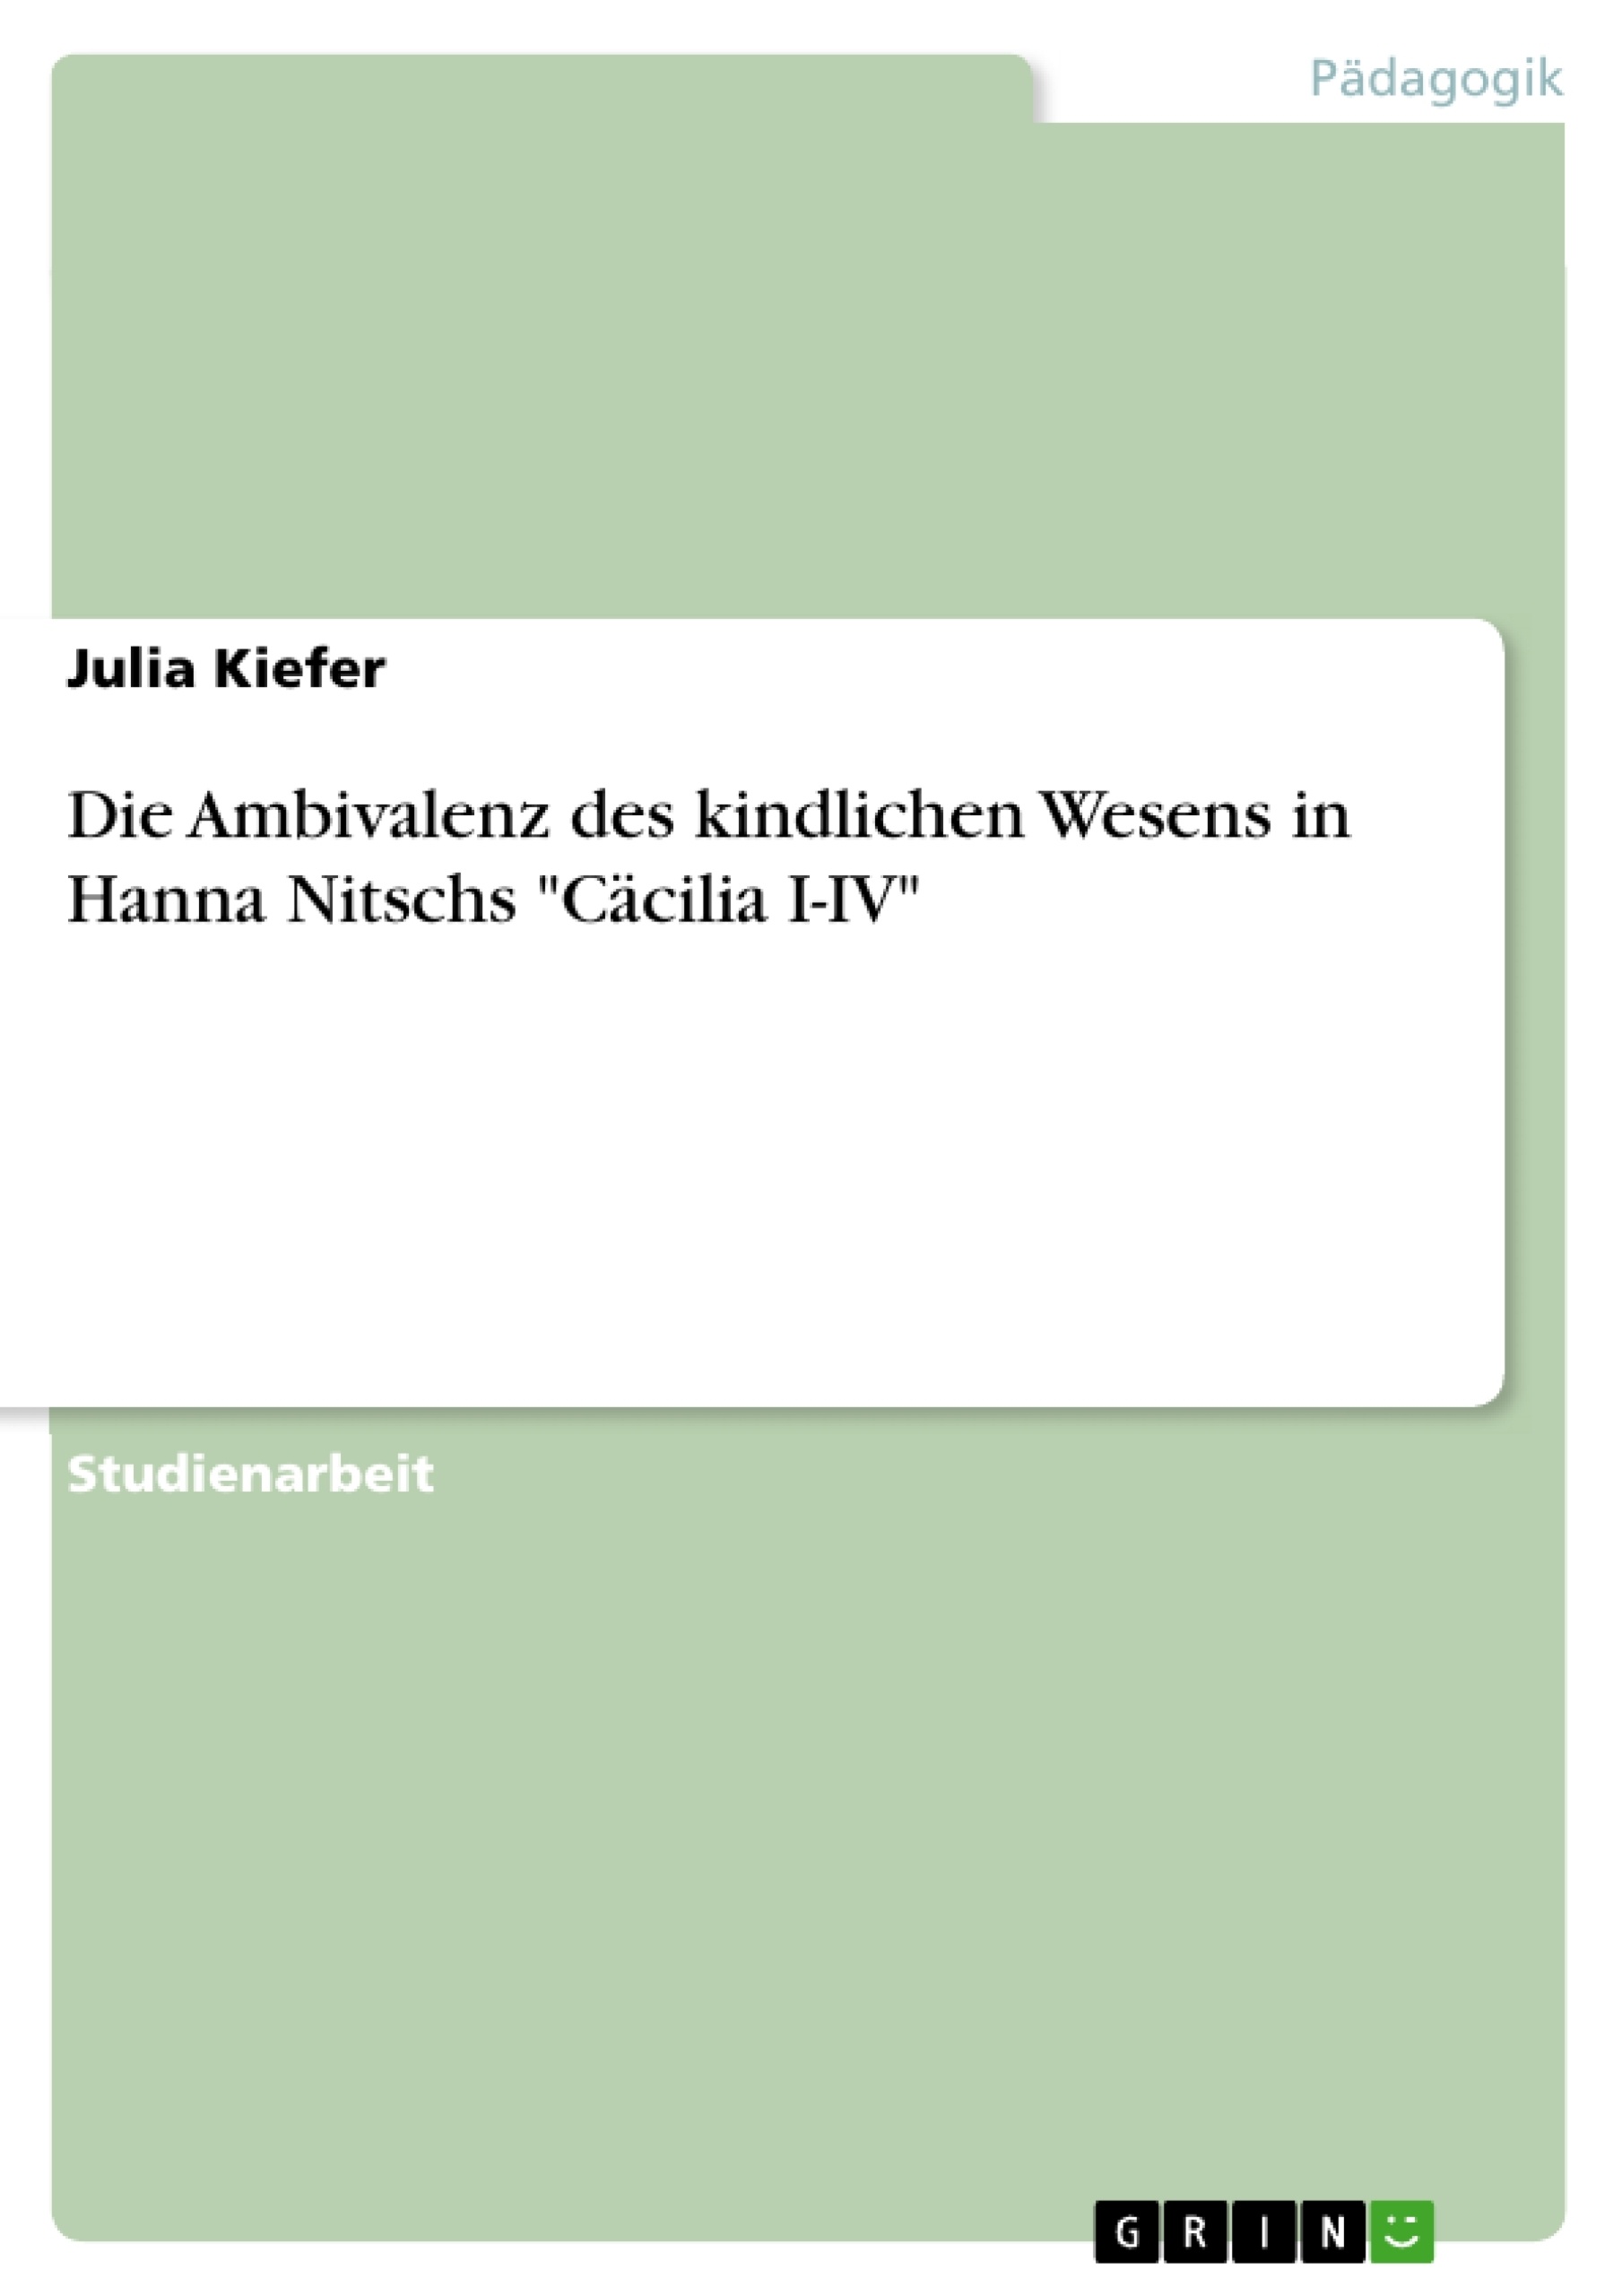 Titre: Die Ambivalenz des kindlichen Wesens in Hanna Nitschs "Cäcilia I-IV"